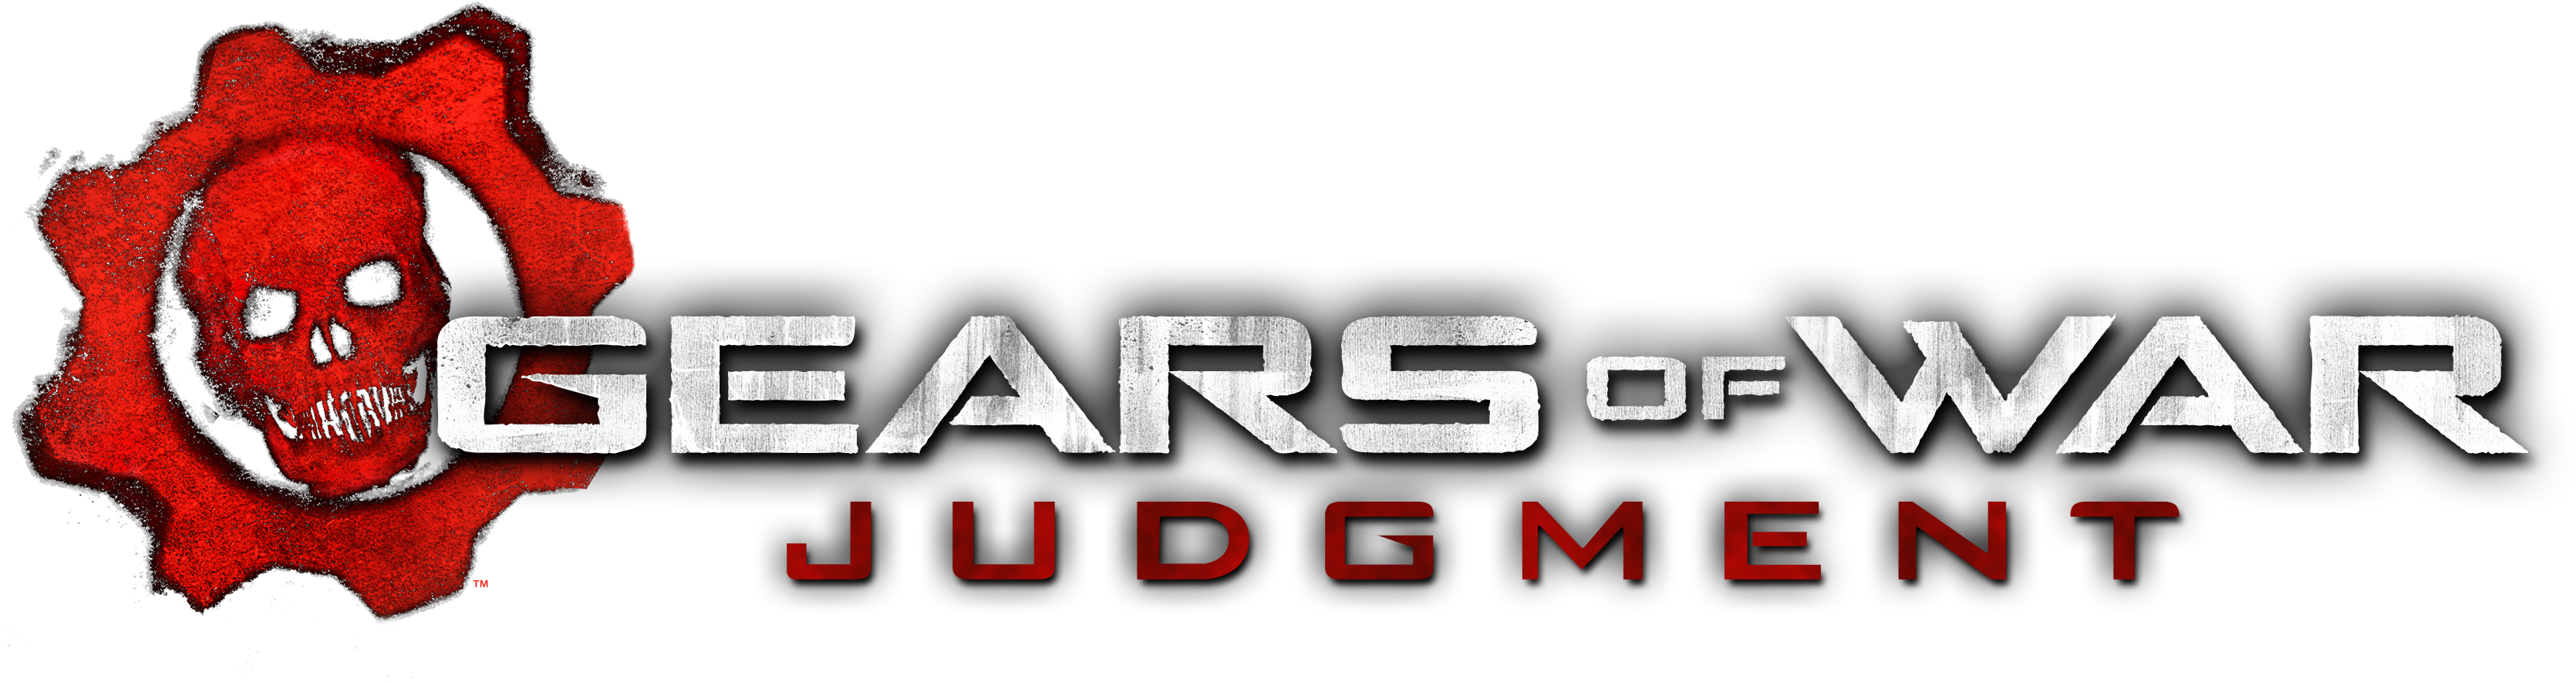 Gears Of War Judgment Gears Of War, Game Logo, Video - Gears Of War Judgment Logo Png Clipart (3500x1000), Png Download